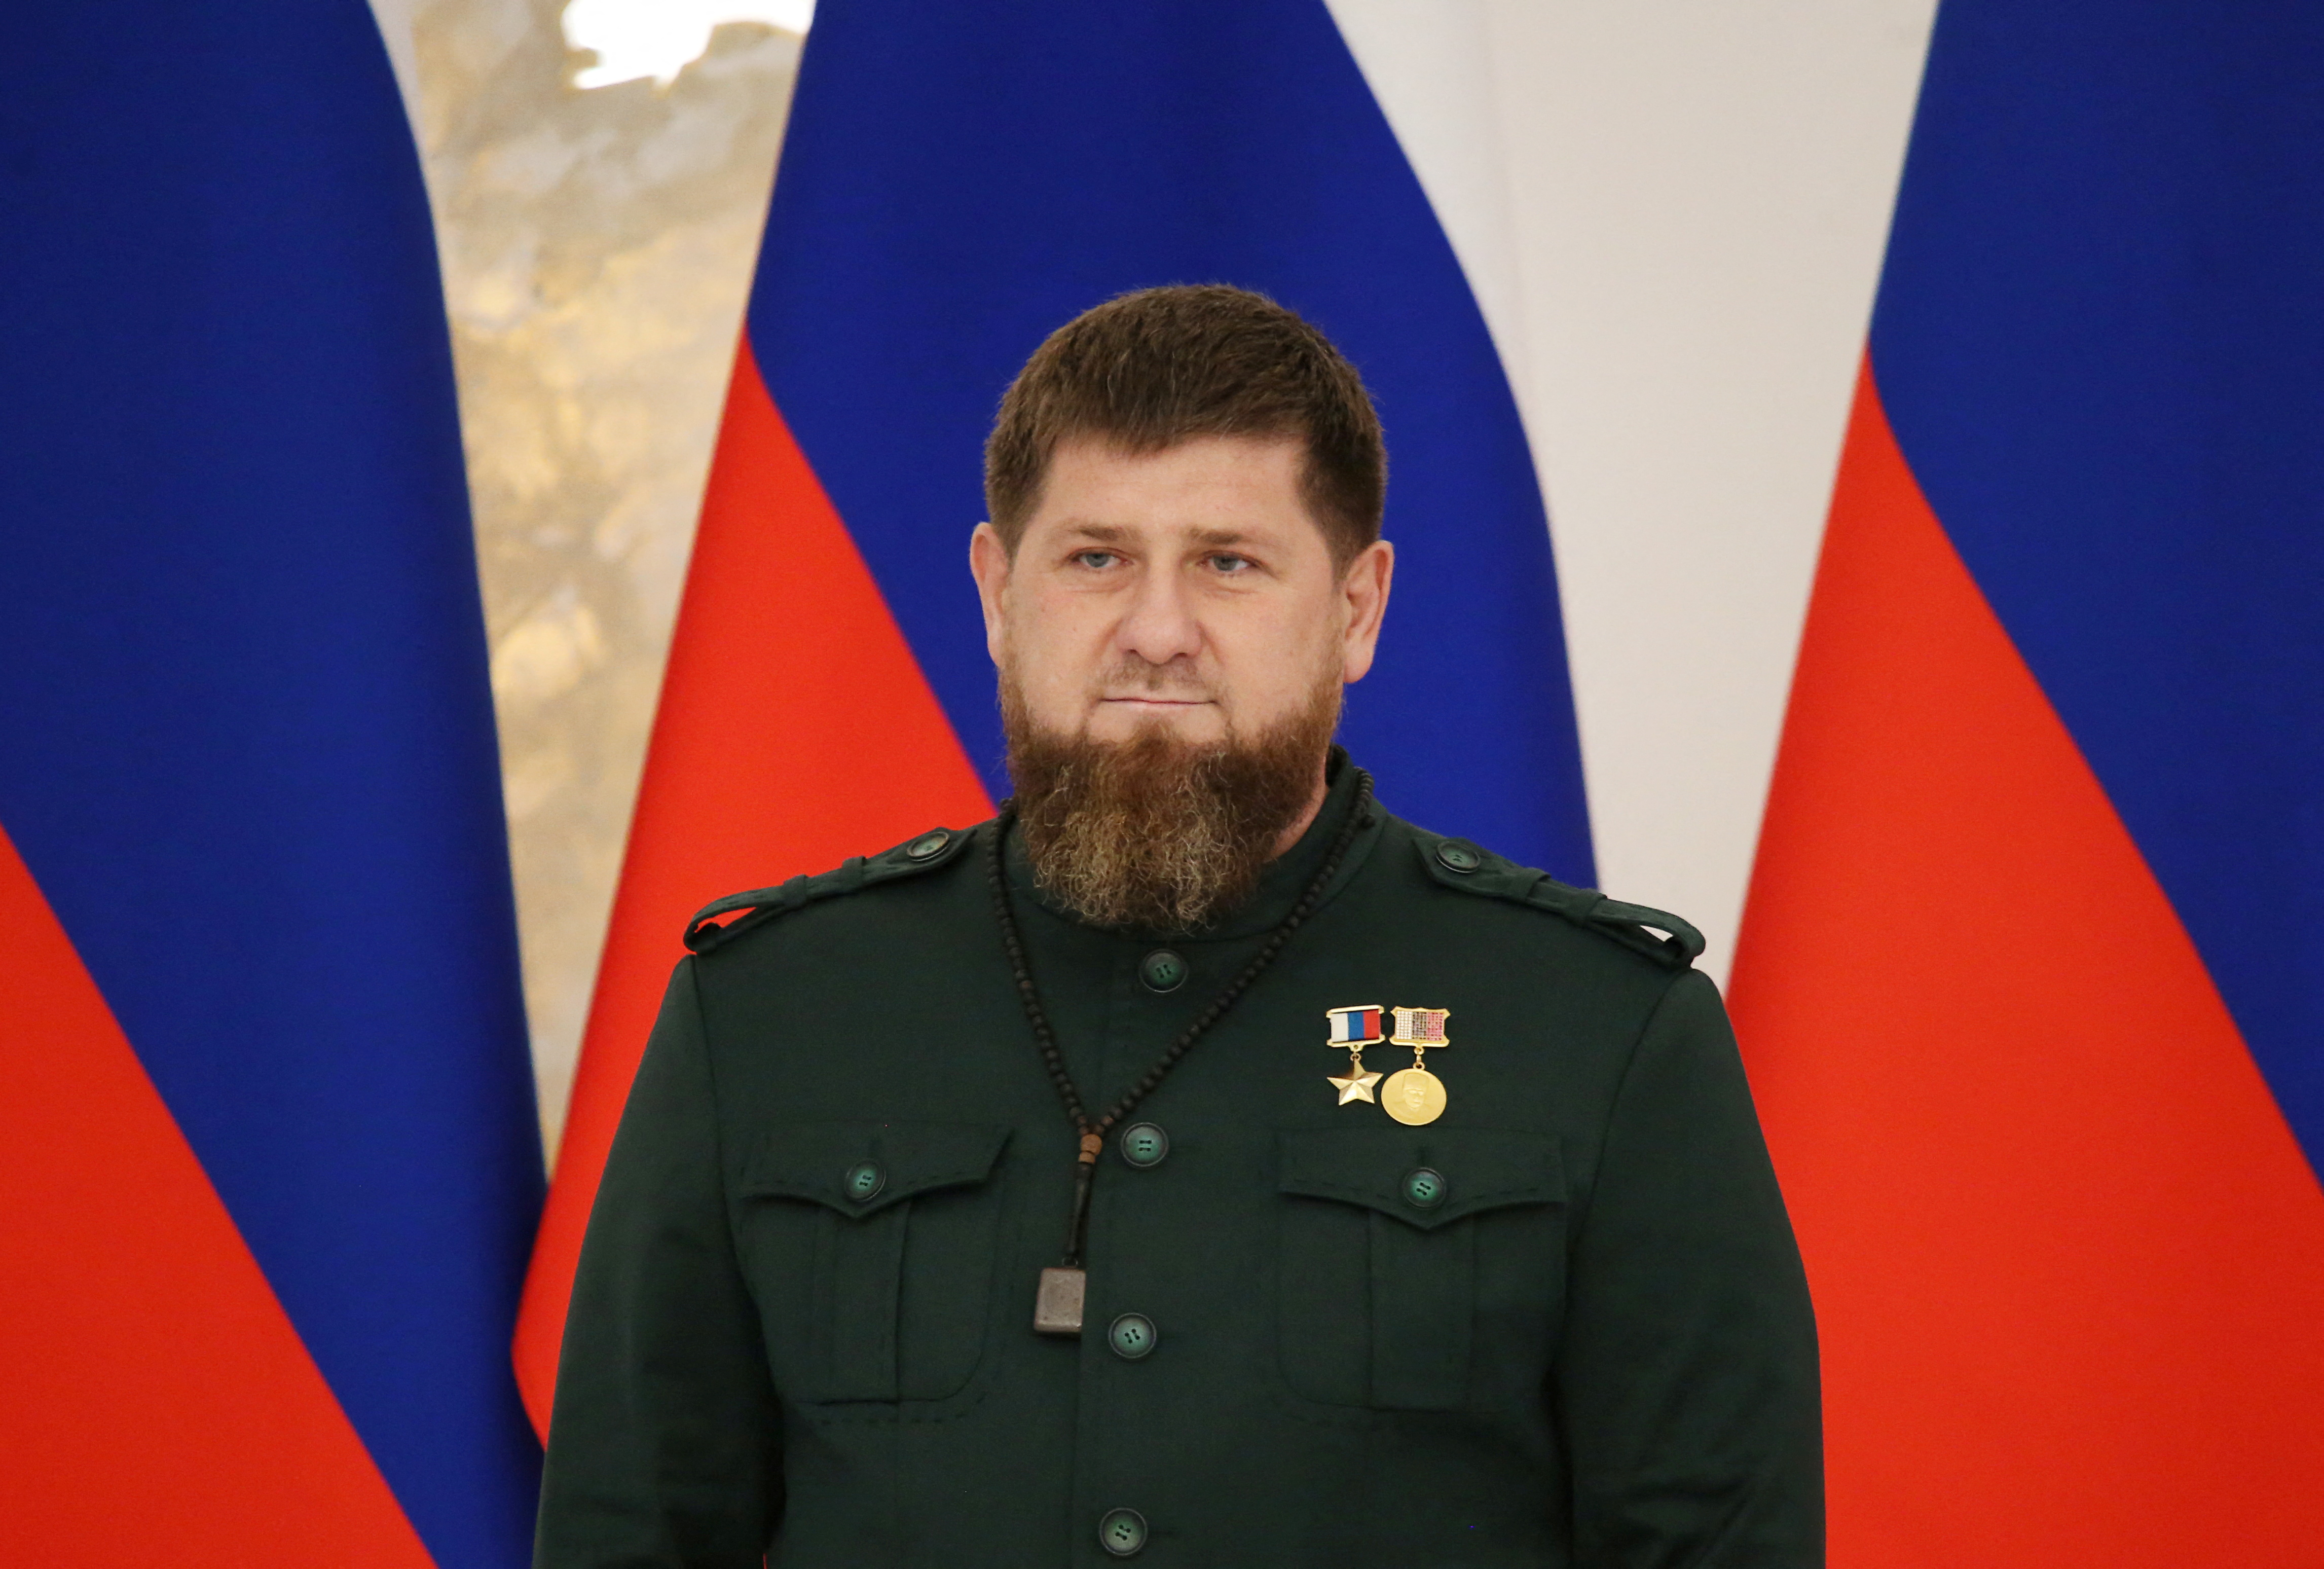 FOTO DE ARCHIVO: El reelegido jefe de la República de Chechenia, Ramzan Kadyrov, asiste a una ceremonia de investidura en Grozny, Rusia, el 5 de octubre de 2021. REUTERS/Chingis Kondarov